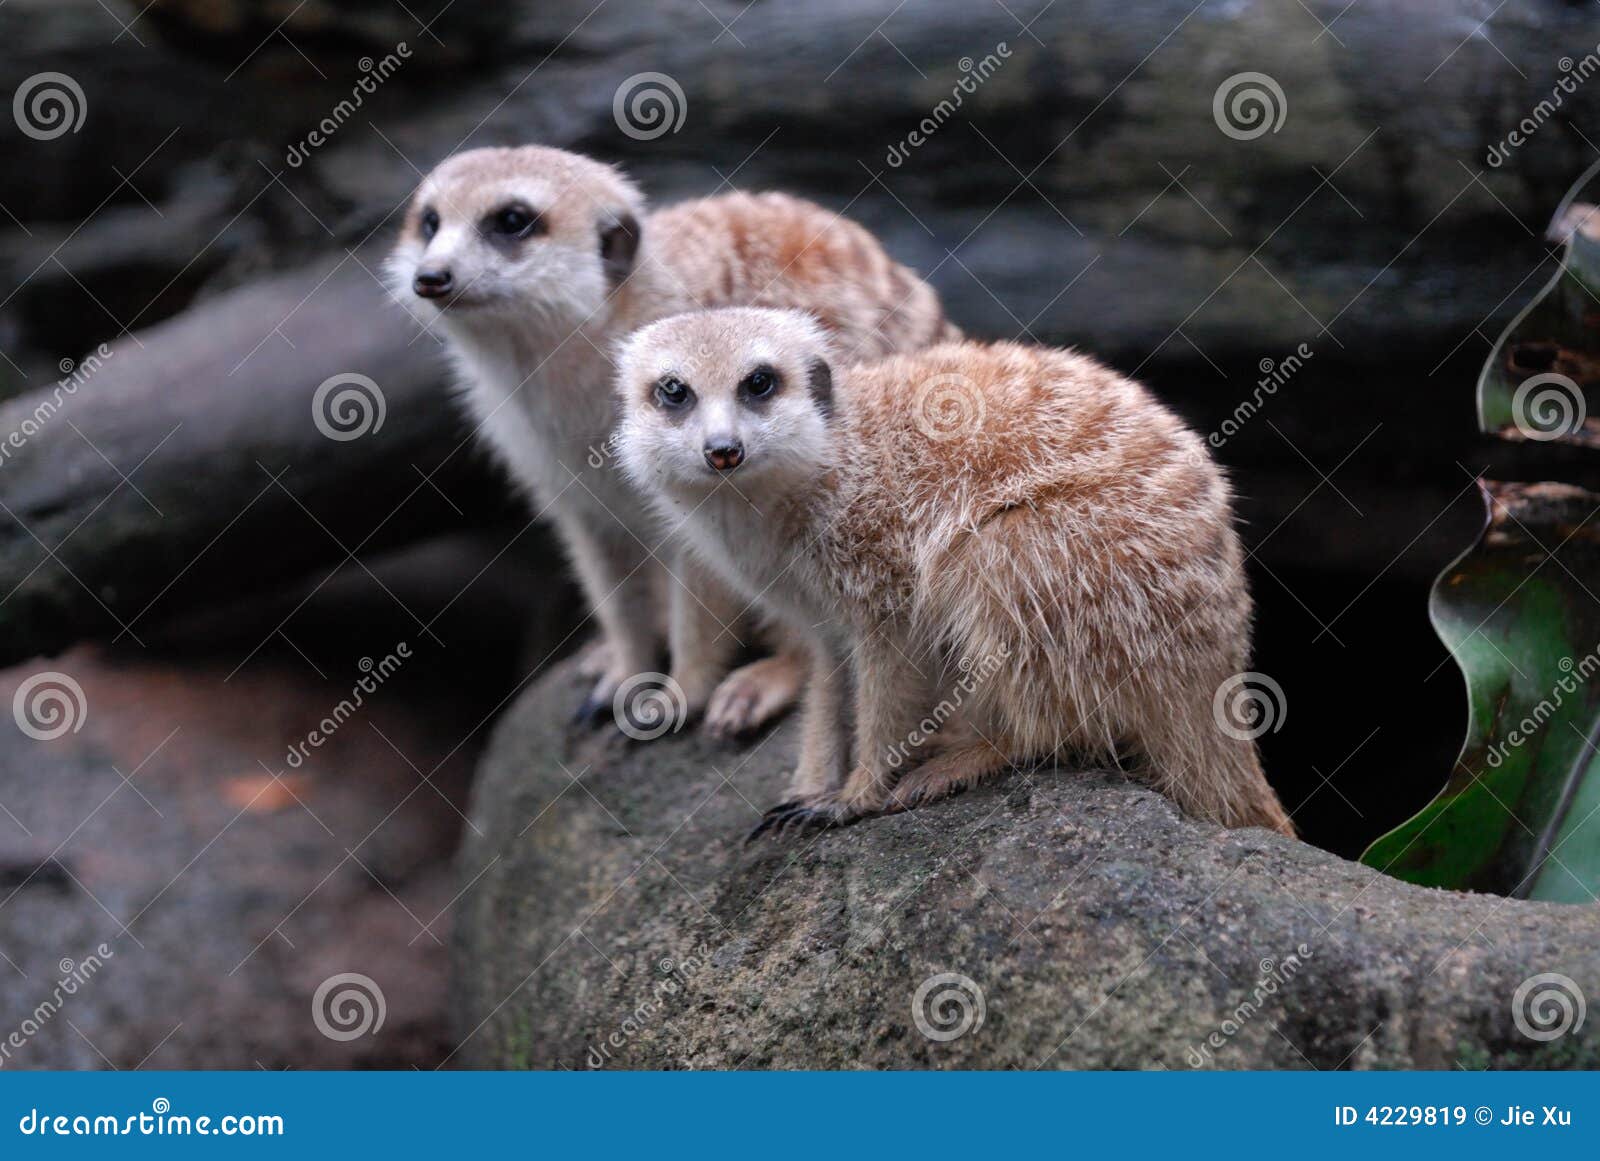 meerkats, singapore zoological garden